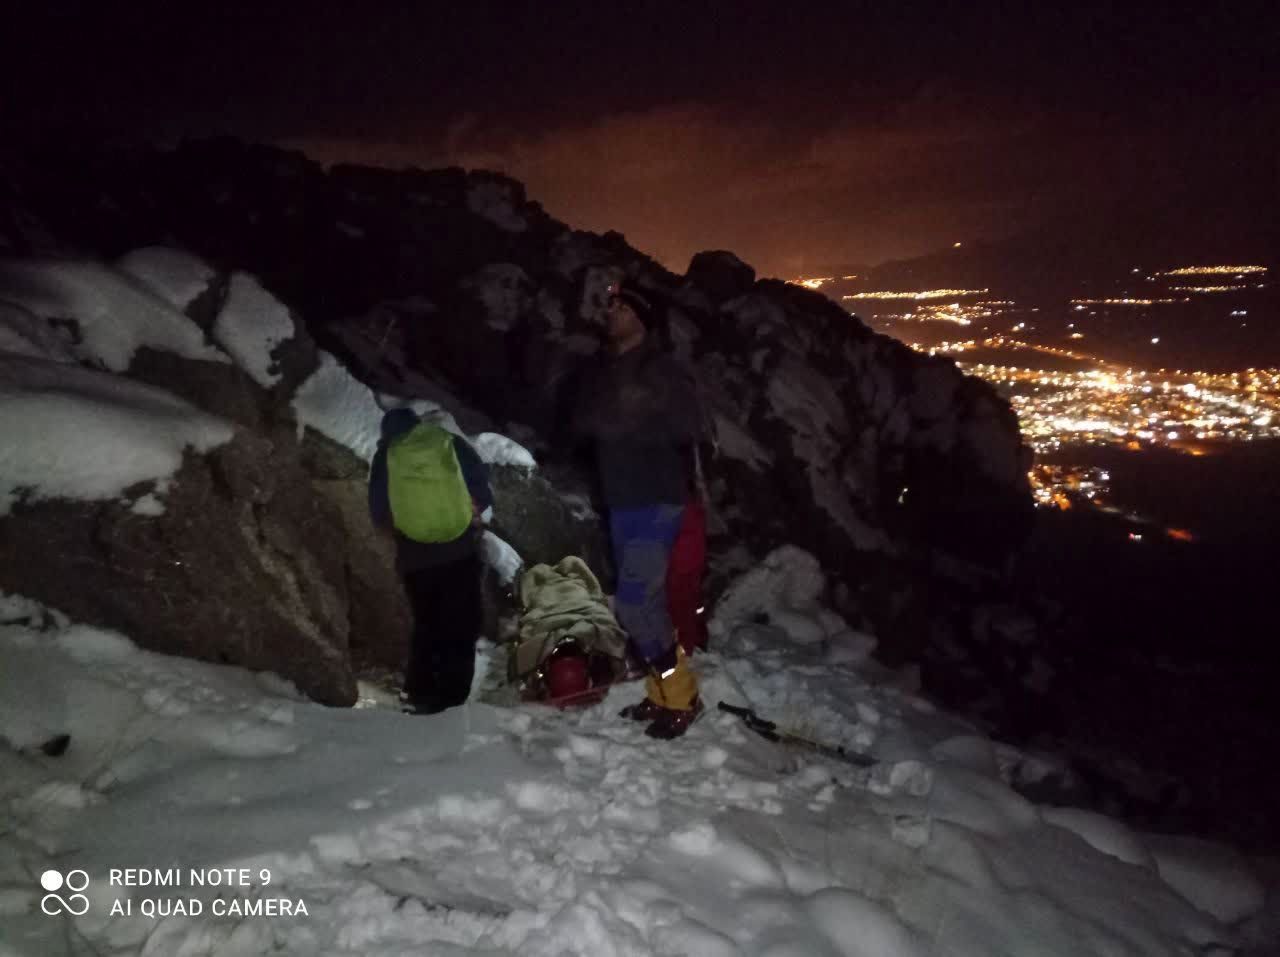 نجات کوهنوردان در برف مانده توسط هلال احمر